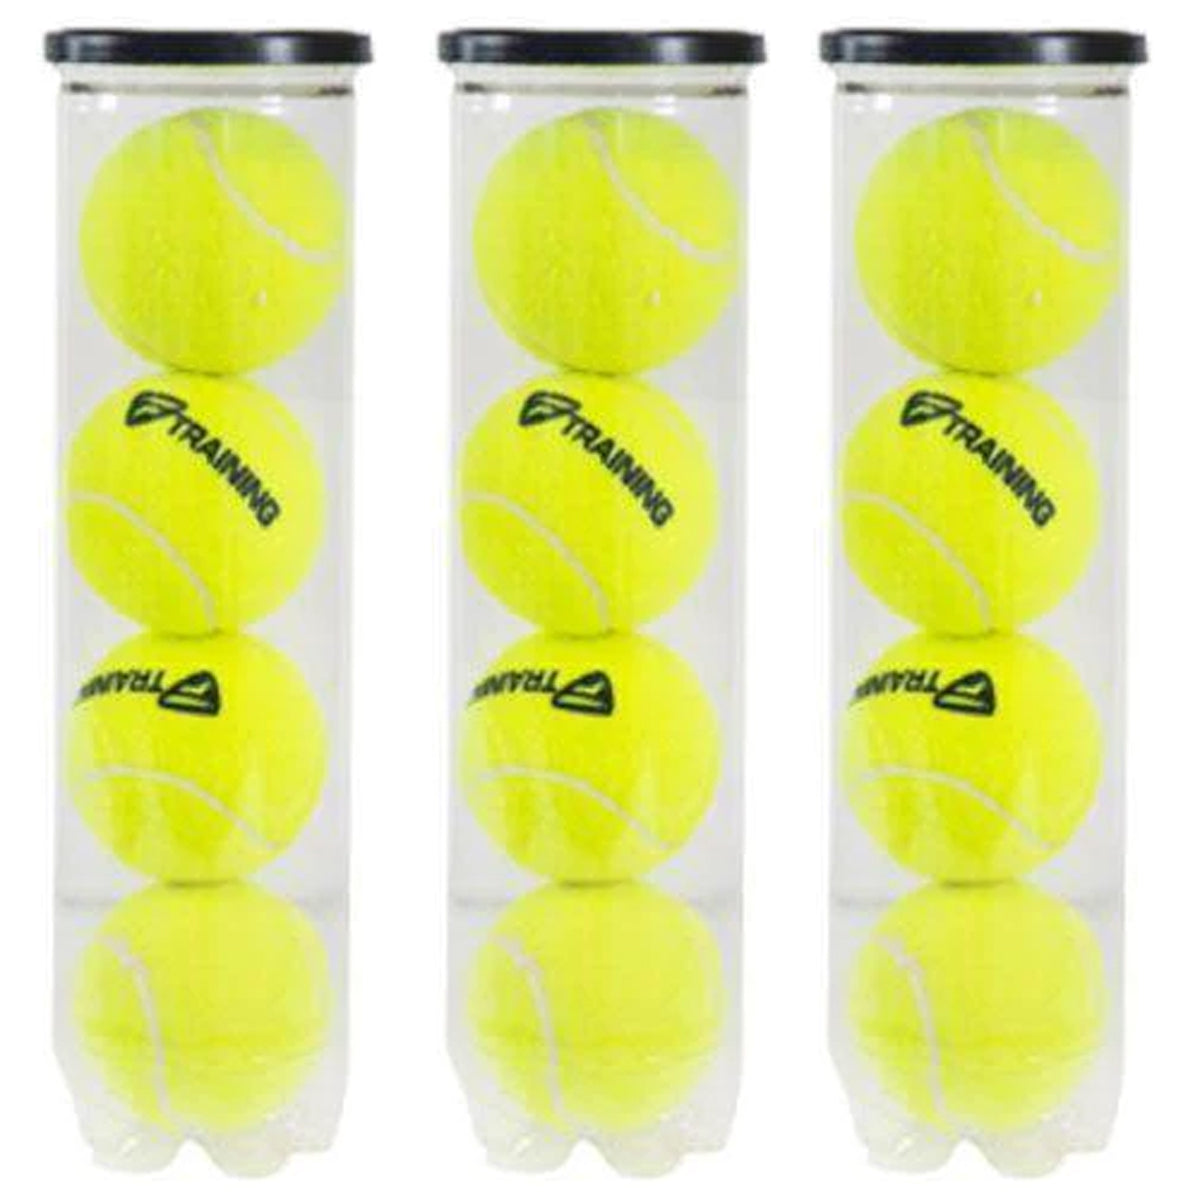 Tecnifibre Training New Tennis Balls Dozen, 3 Cans (4 Ball Per Can) - Best Price online Prokicksports.com